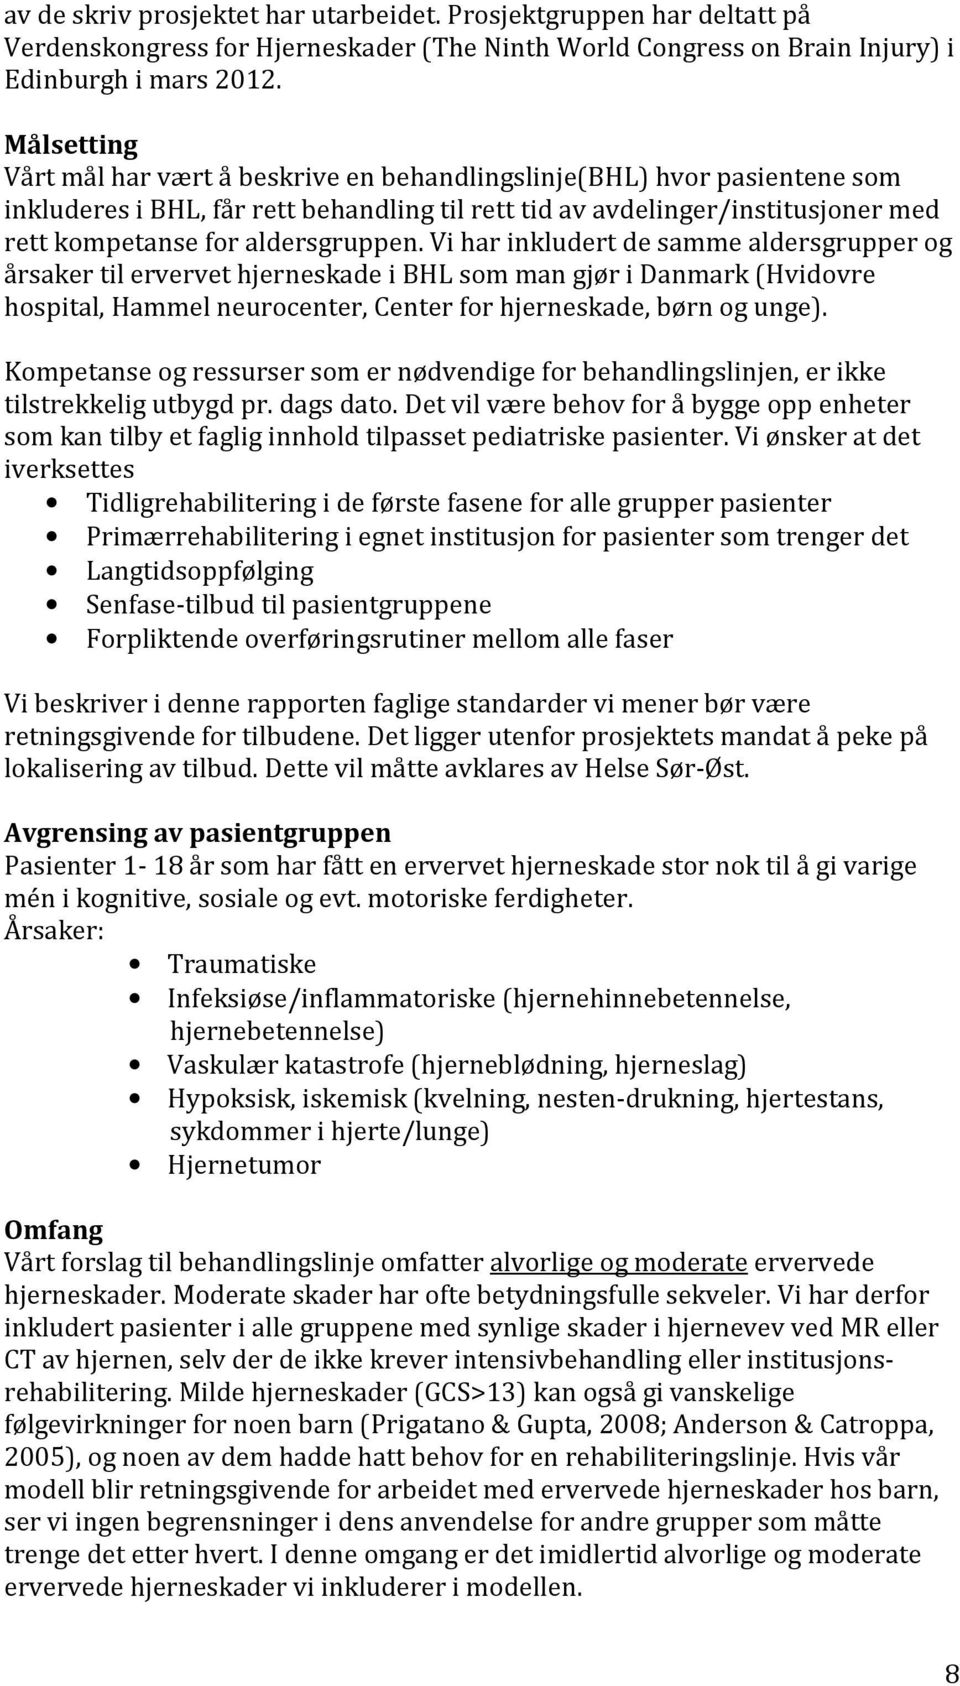 aldersgruppen. Vi har inkludert de samme aldersgrupper og årsaker til ervervet hjerneskade i BHL som man gjør i Danmark (Hvidovre hospital, Hammel neurocenter, Center for hjerneskade, børn og unge).